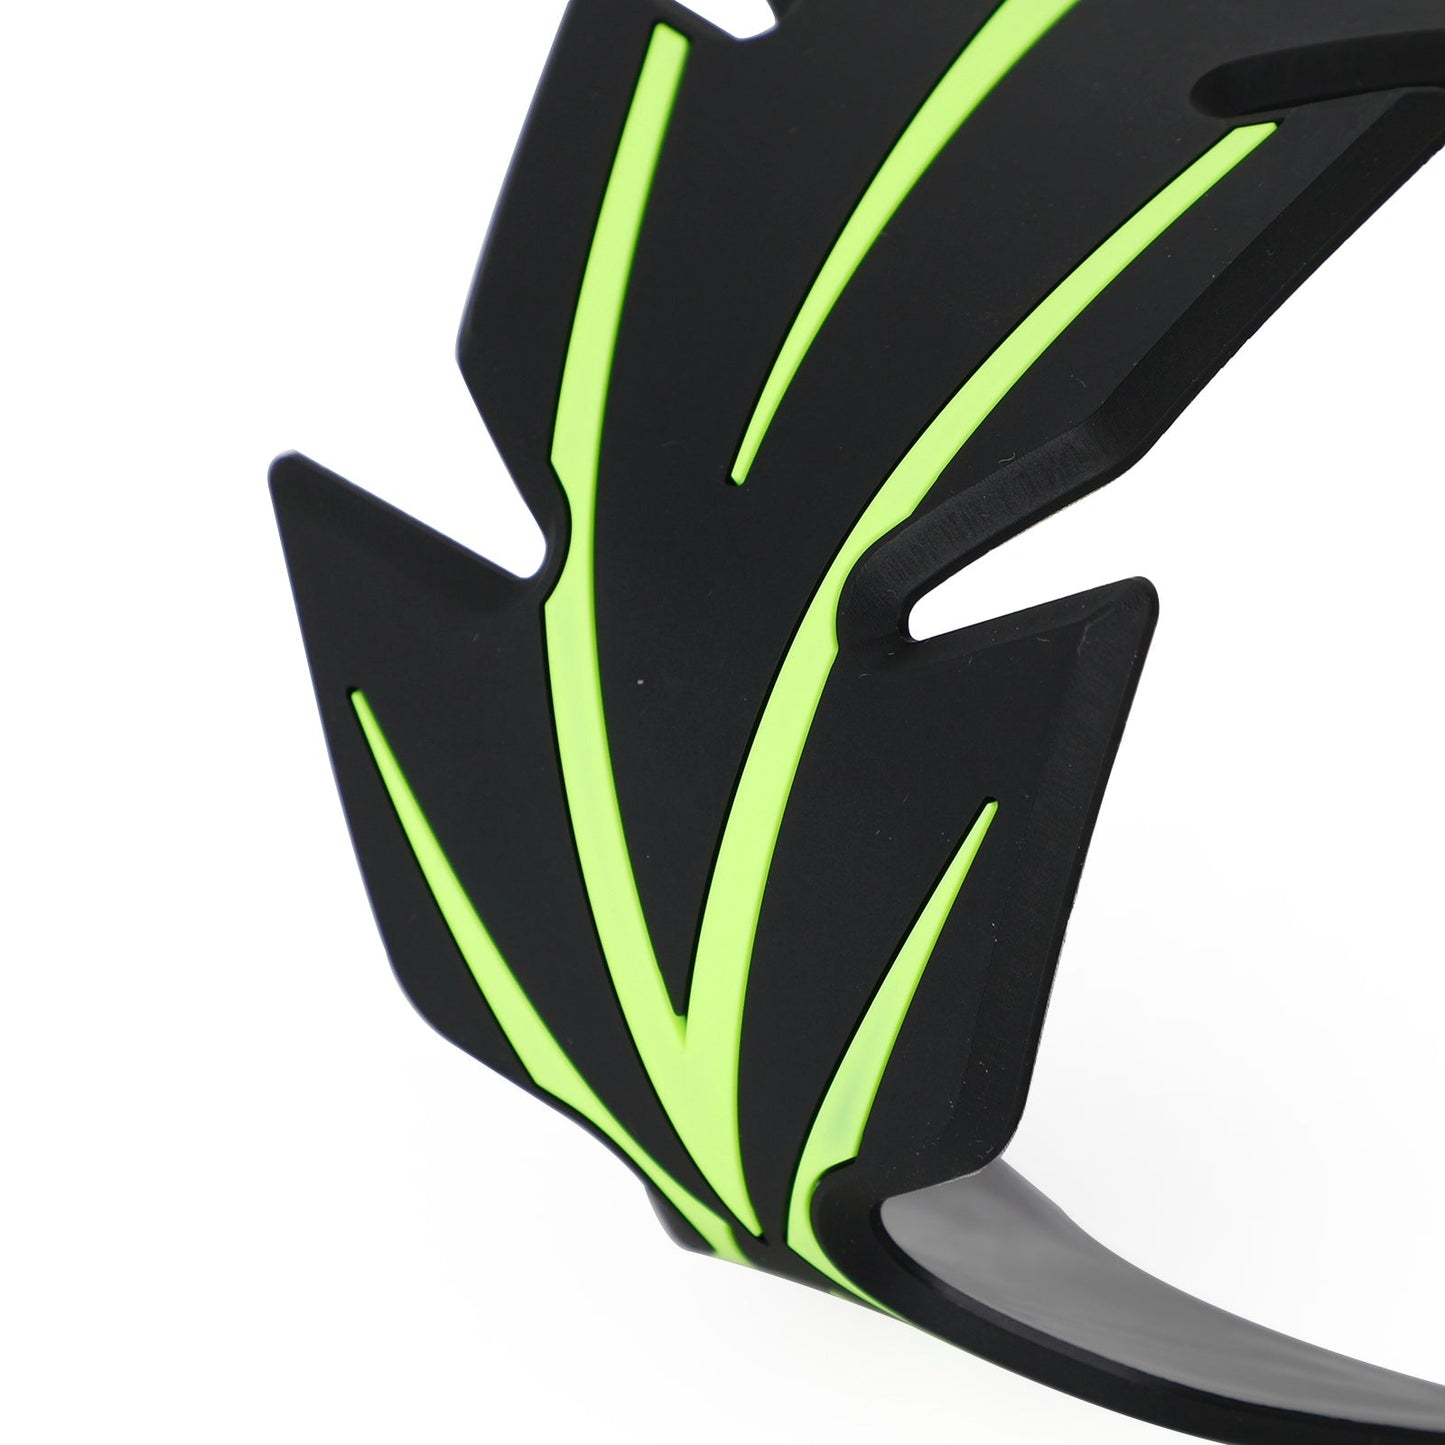 Nouveau protège-réservoir de moto universel noir vert pour Kawasaki Ninja